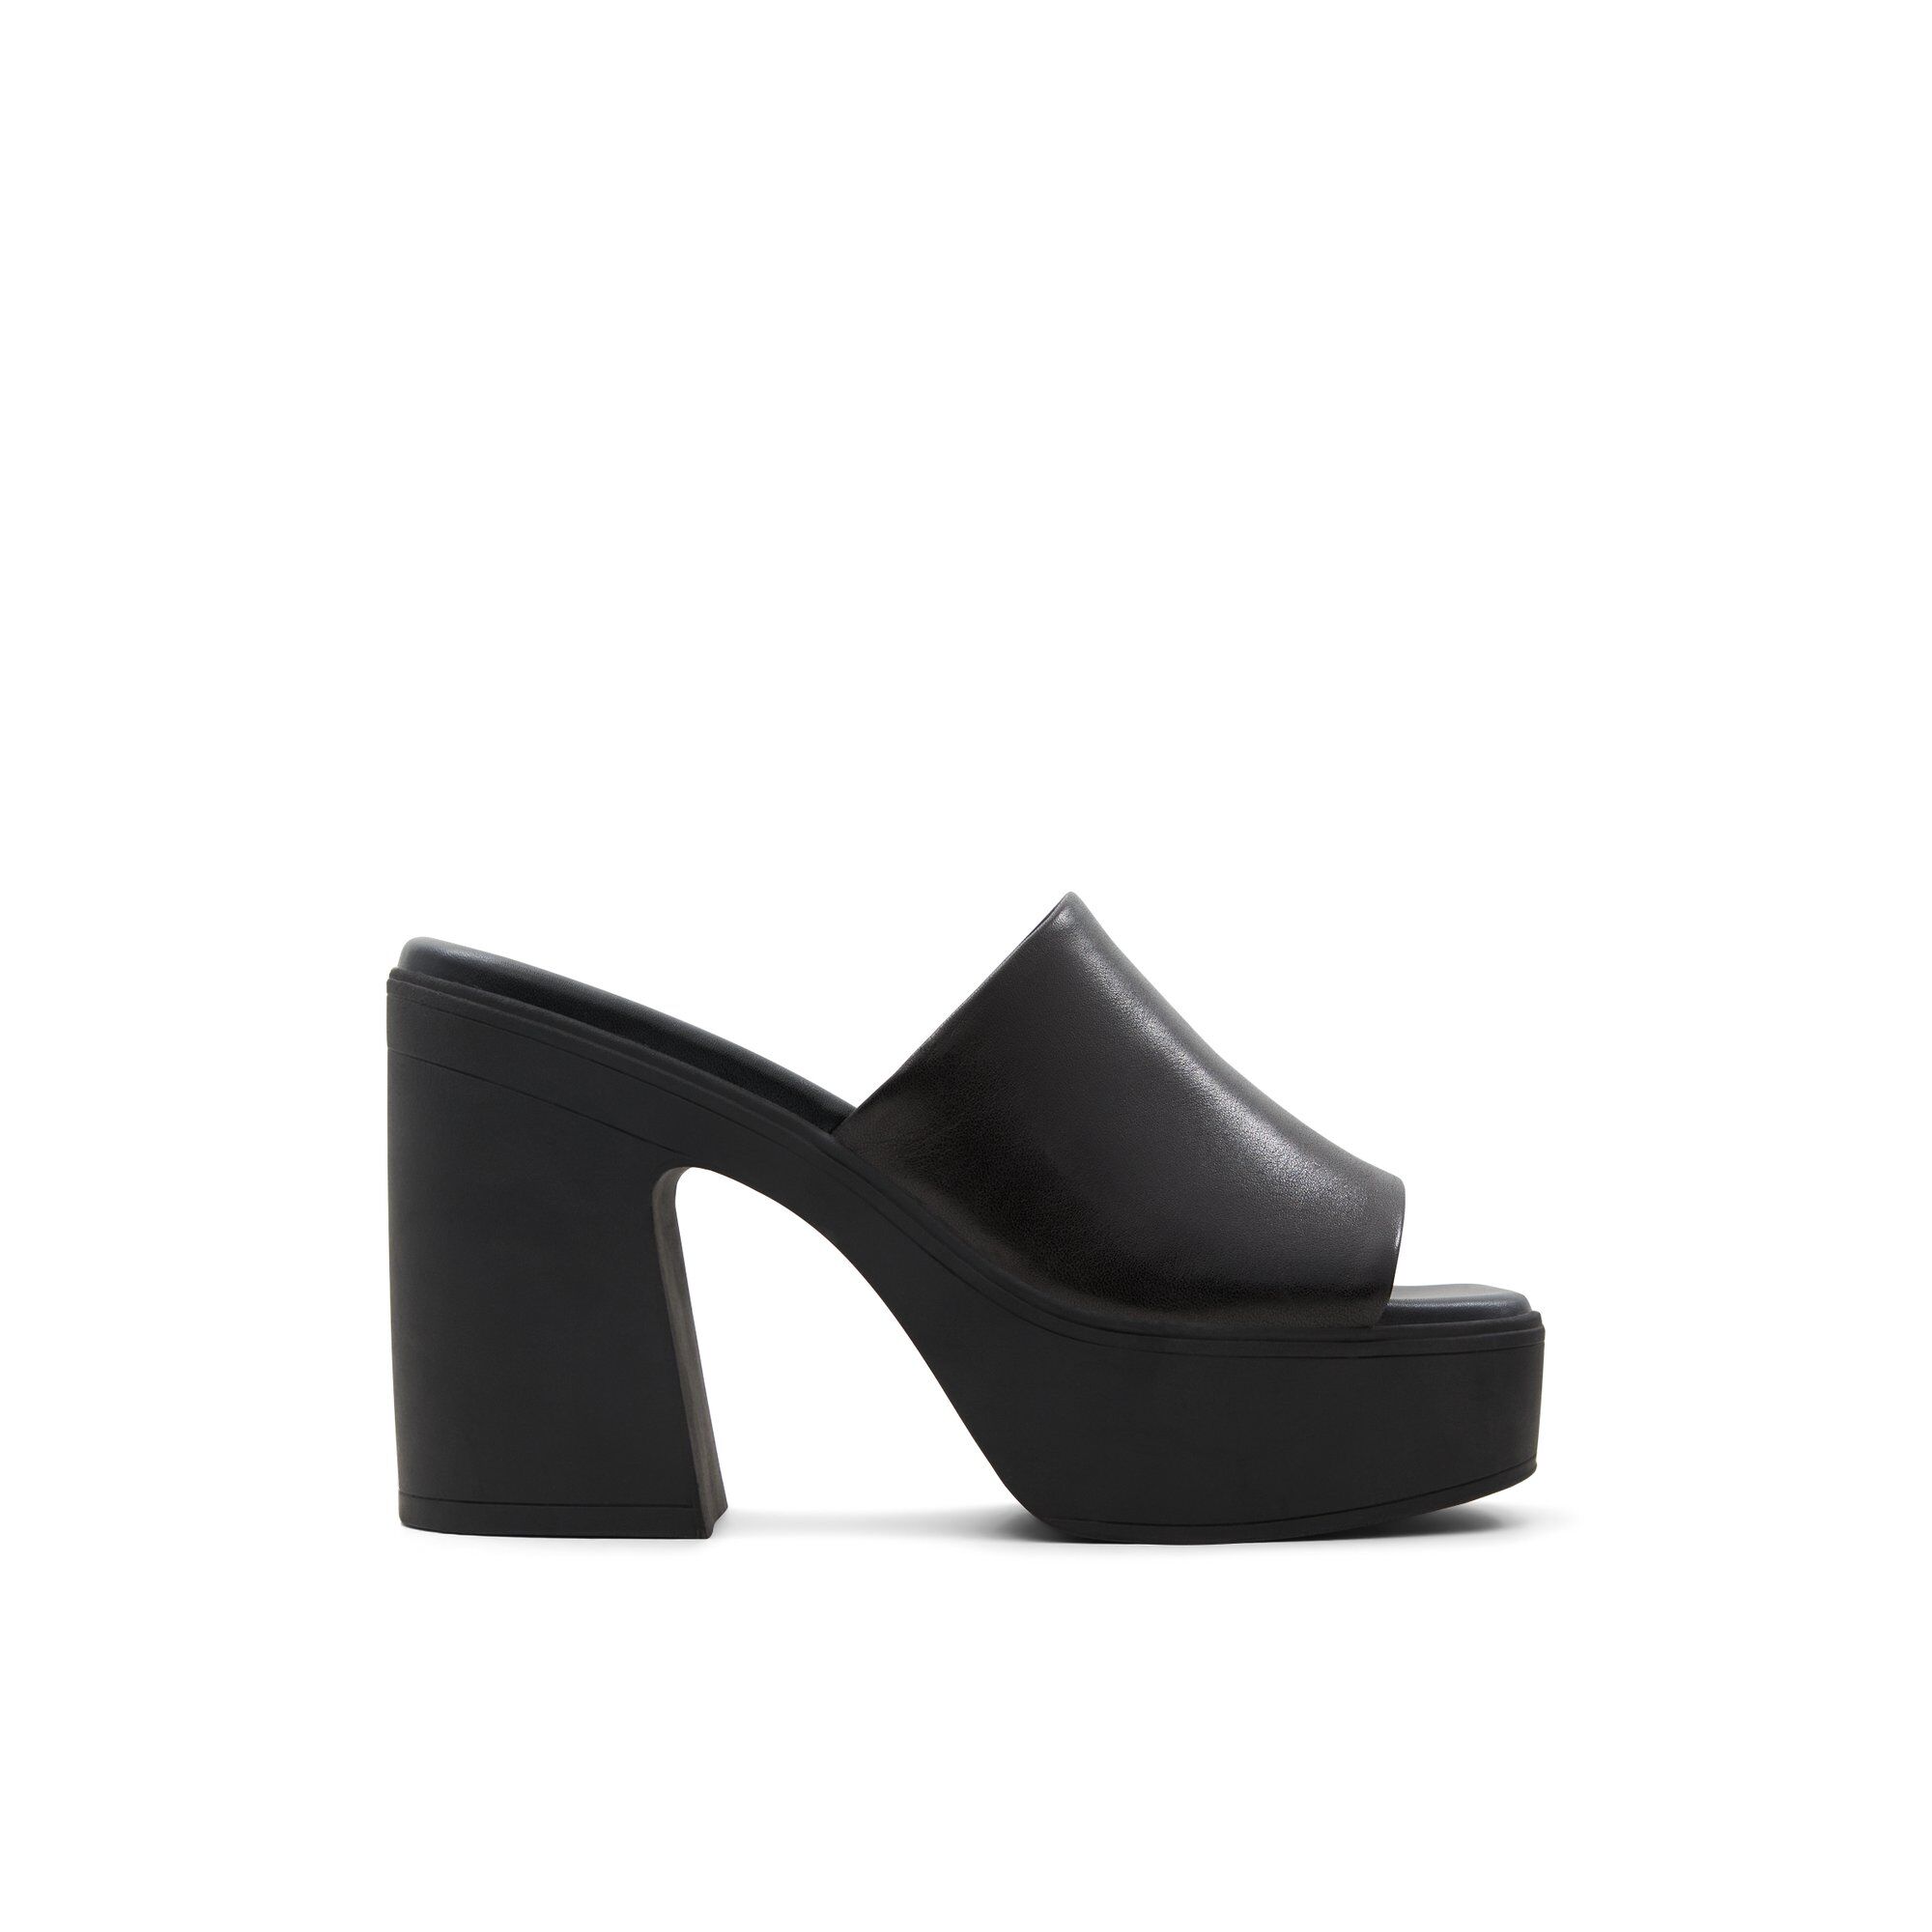 ALDO Maysee - Women's Mule Slide - Black, Size 11